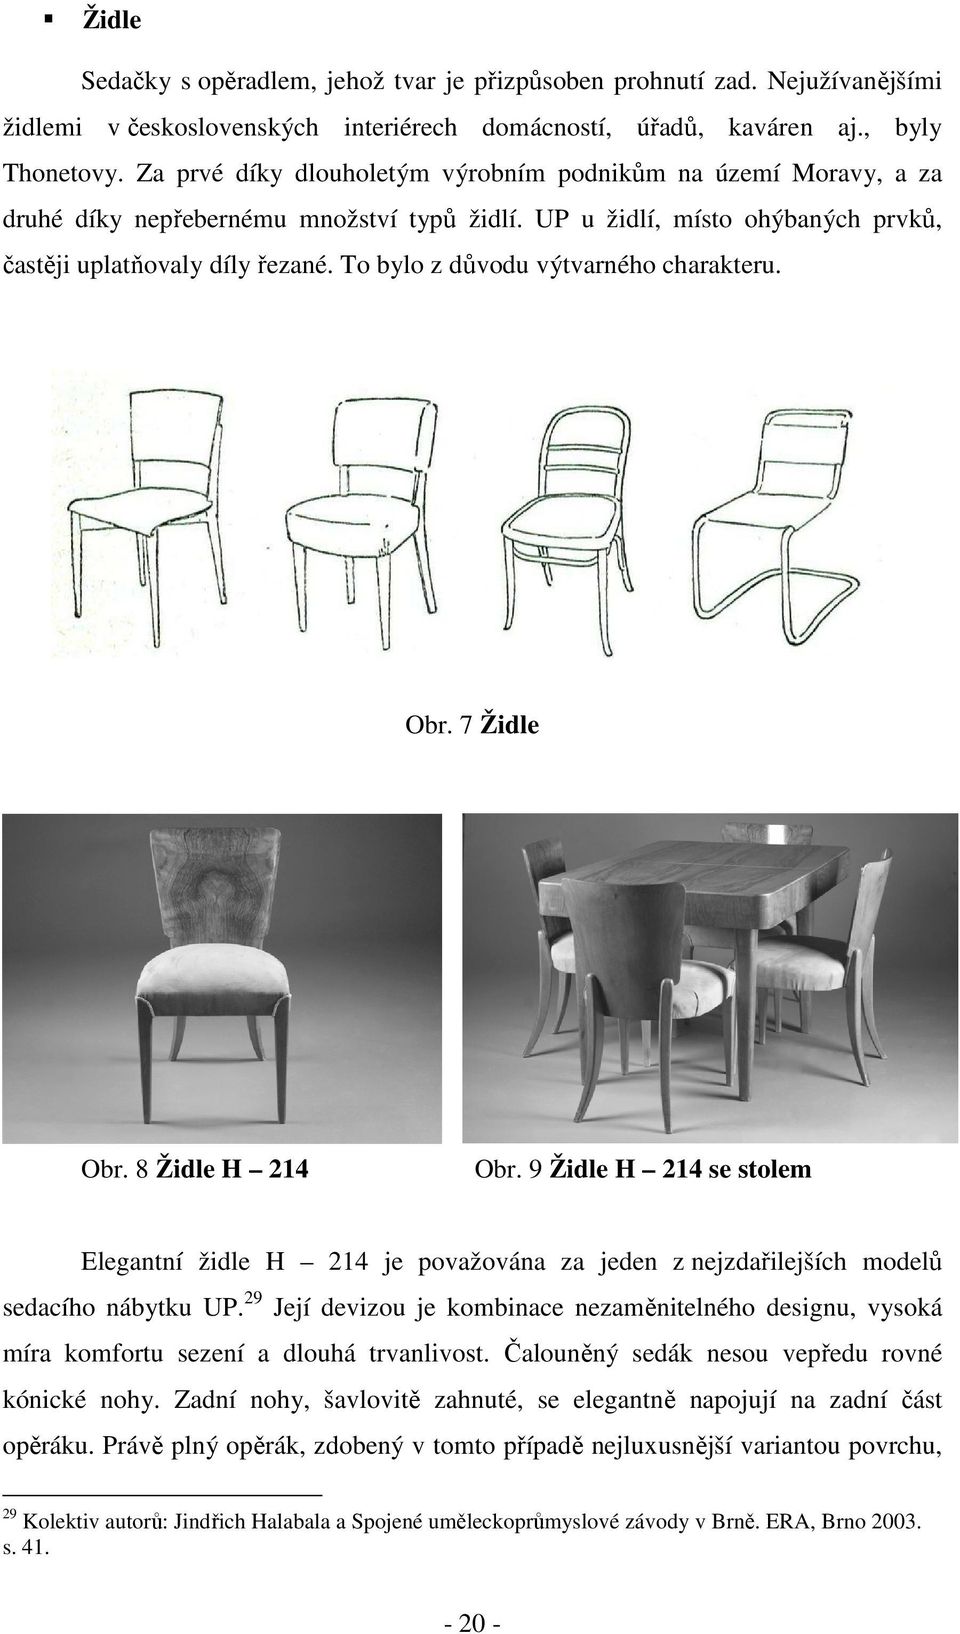 To bylo z důvodu výtvarného charakteru. Obr. 7 Židle Obr. 8 Židle H 214 Obr. 9 Židle H 214 se stolem Elegantní židle H 214 je považována za jeden z nejzdařilejších modelů sedacího nábytku UP.